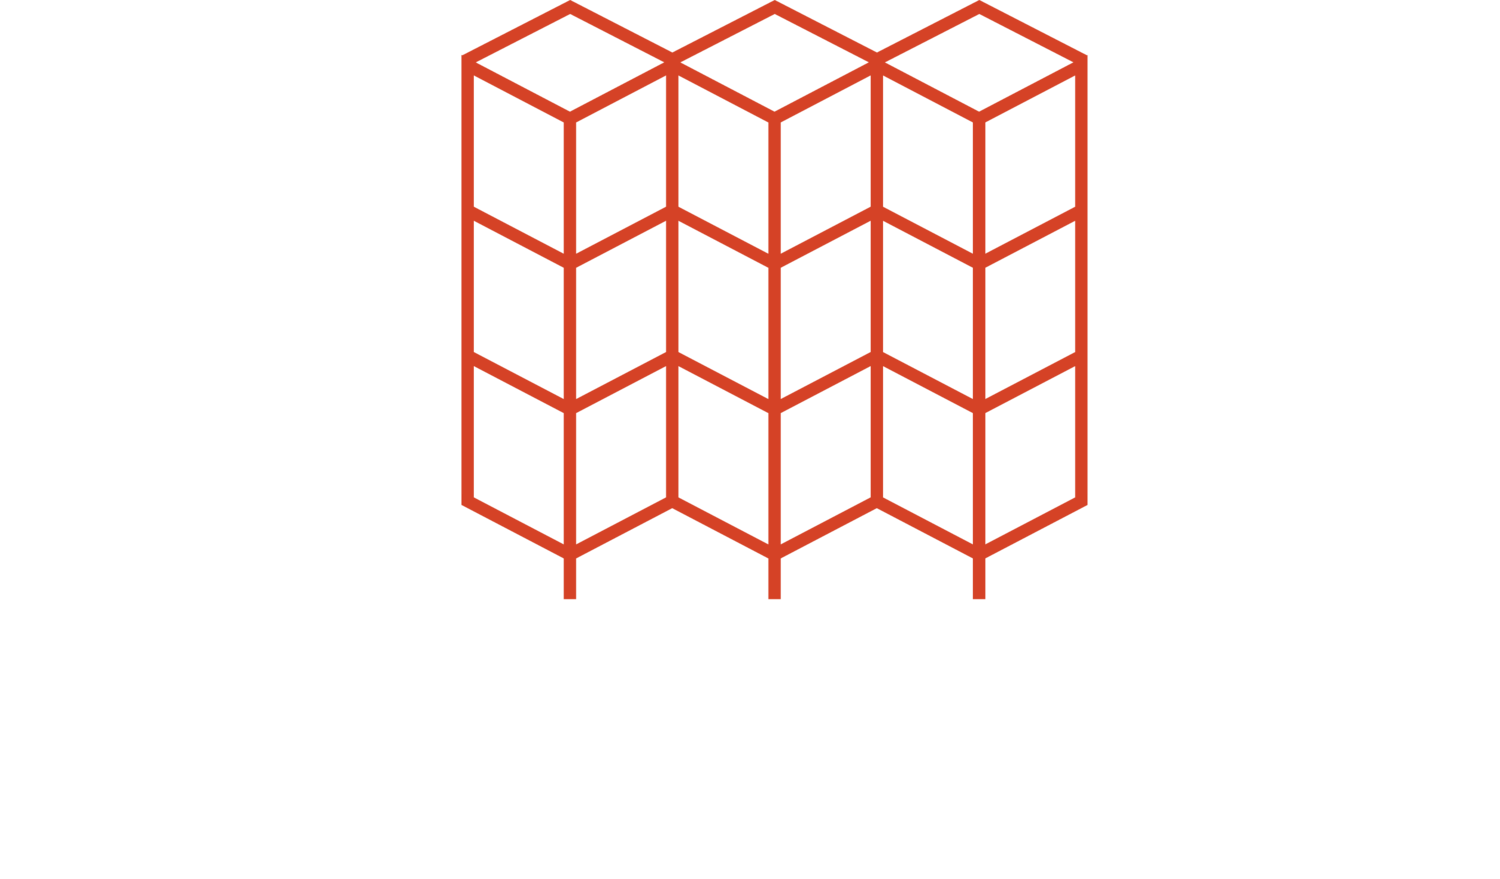 Waymark Architecture